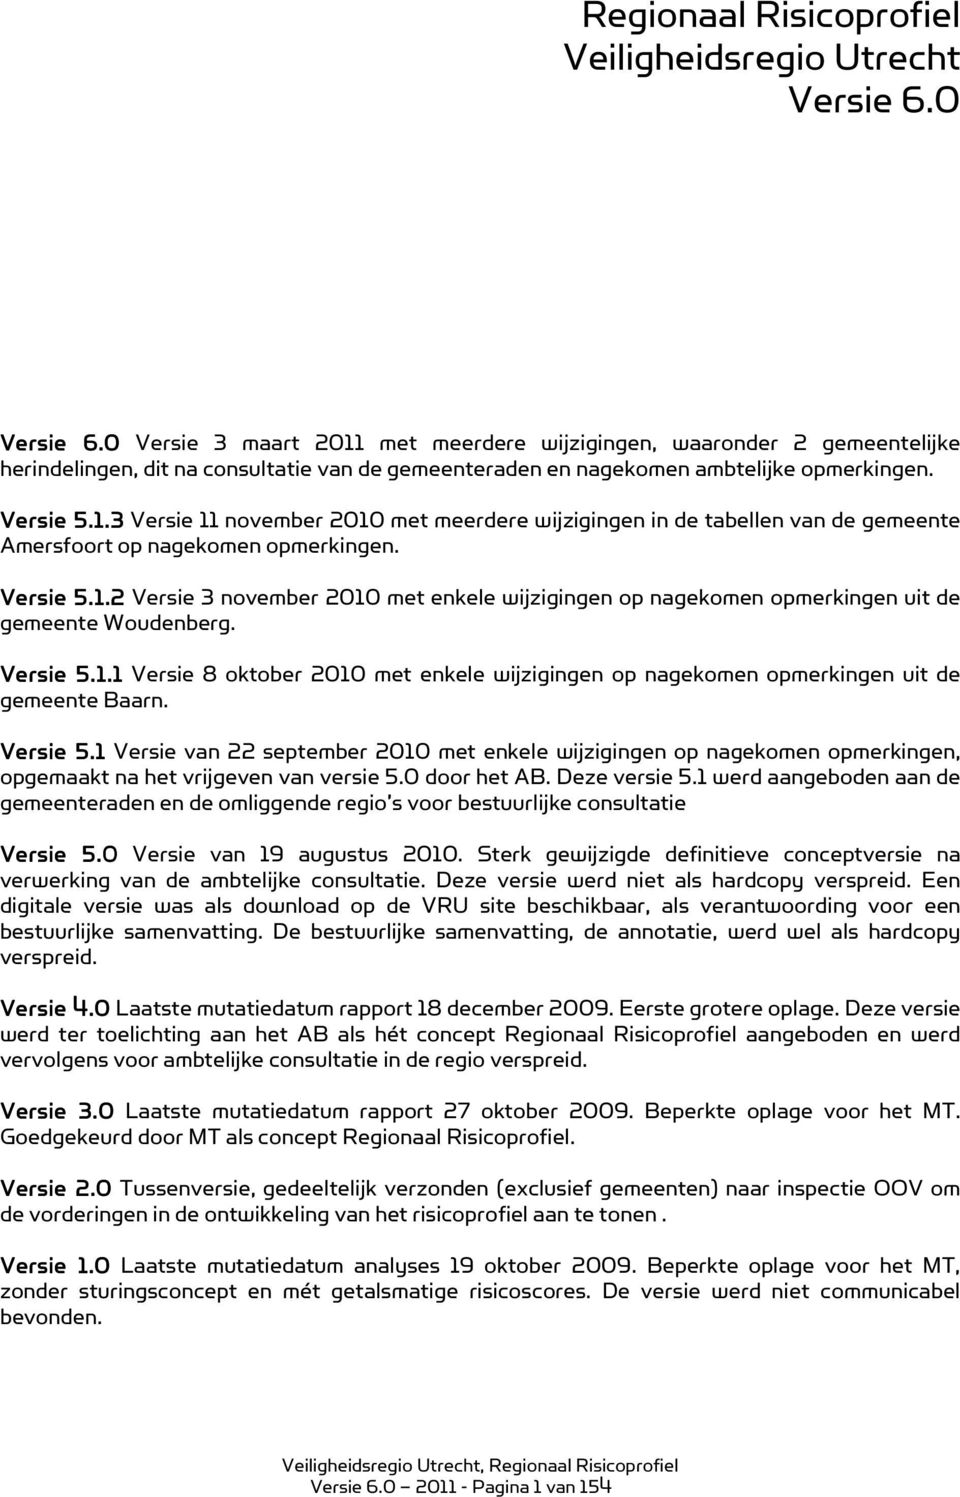 Versie 5.1.2 Versie 3 november 2010 met enkele wijzigingen op nagekomen opmerkingen uit de gemeente Woudenberg. Versie 5.1.1 Versie 8 oktober 2010 met enkele wijzigingen op nagekomen opmerkingen uit de gemeente Baarn.